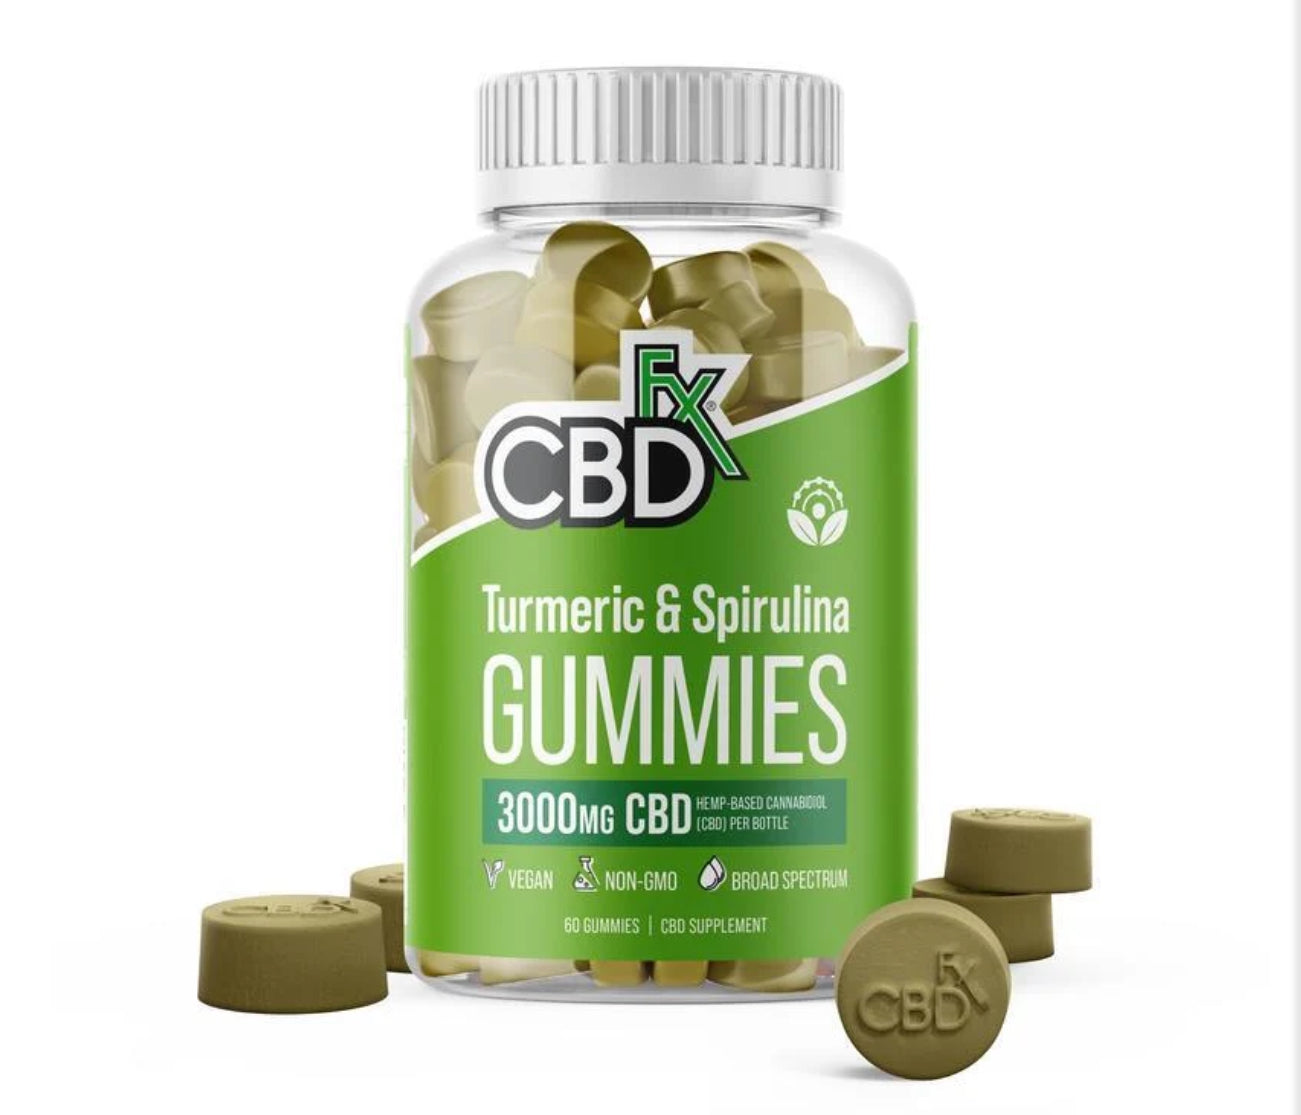 CBDFx Gummies 60ct Jar